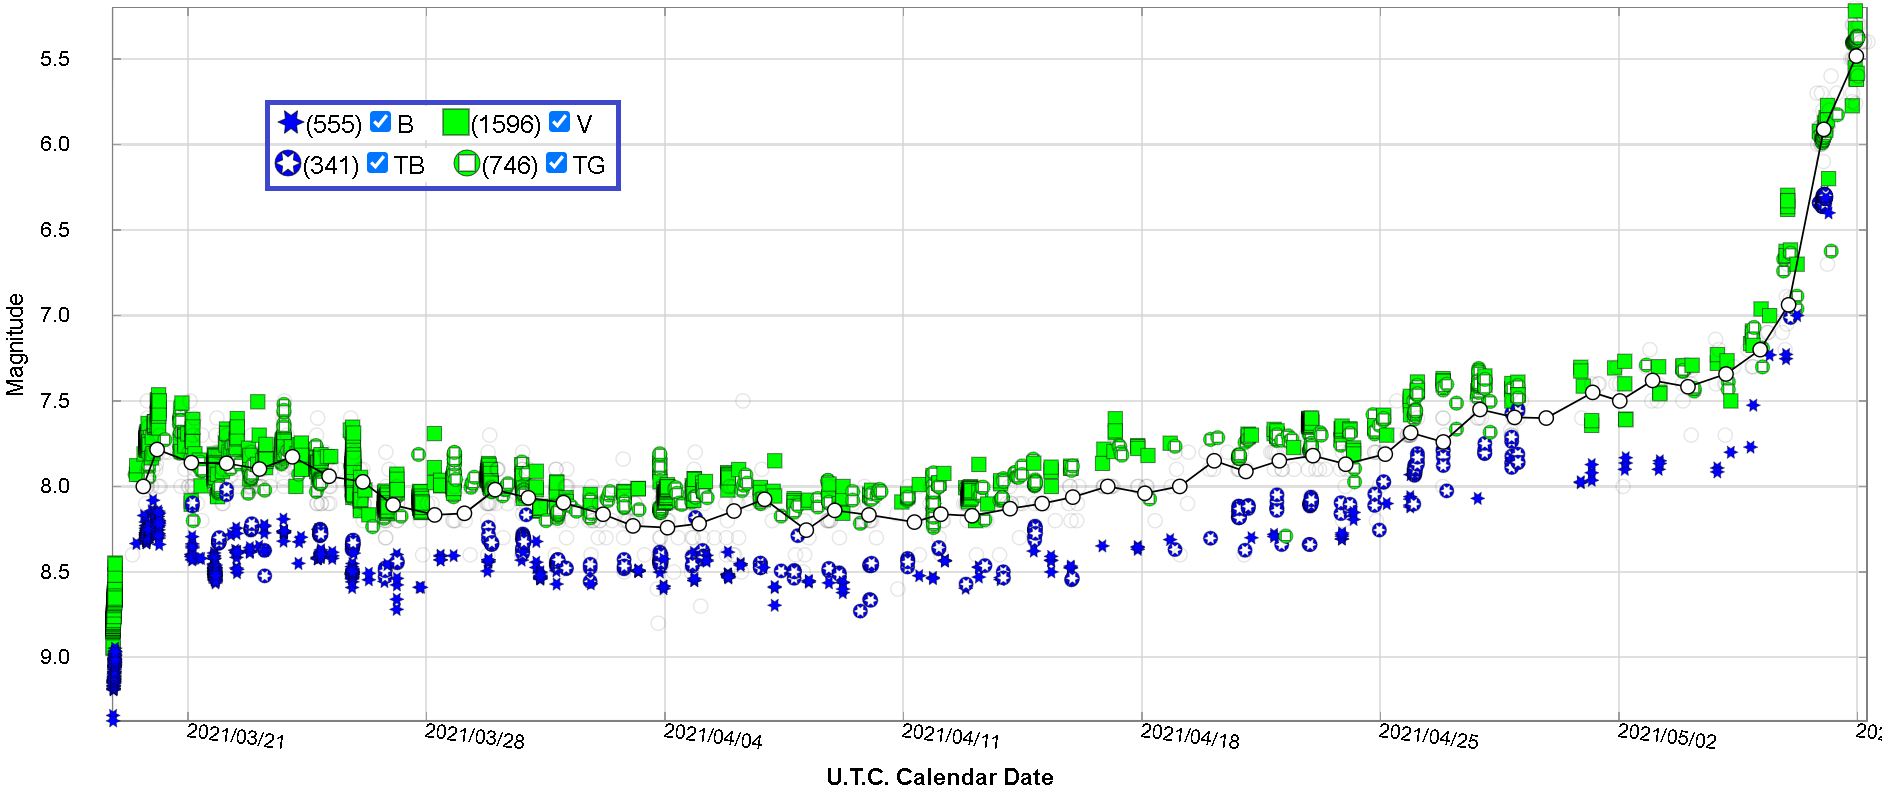 Krzywa blasku nowej V1405 Cas z obserwacjami w bazie AAVSO od 17 marca do 9 maja 2021 r. w dżonsonowskich filtrach astronomicznych V-B oraz lustrzankowych TG-TB. Ciągła czarna linia łączy średnie dzienne obserwacji wizualnych. Ostatnia obserwacja jest z 9 maja godz. 11:30 rano naszego czasu. W górnym lewym rogu podano legendę z liczbą obserwacji w poszczególnych filtrach na dzień 9 maja 2021 r. Źródło: LCG AAVSO